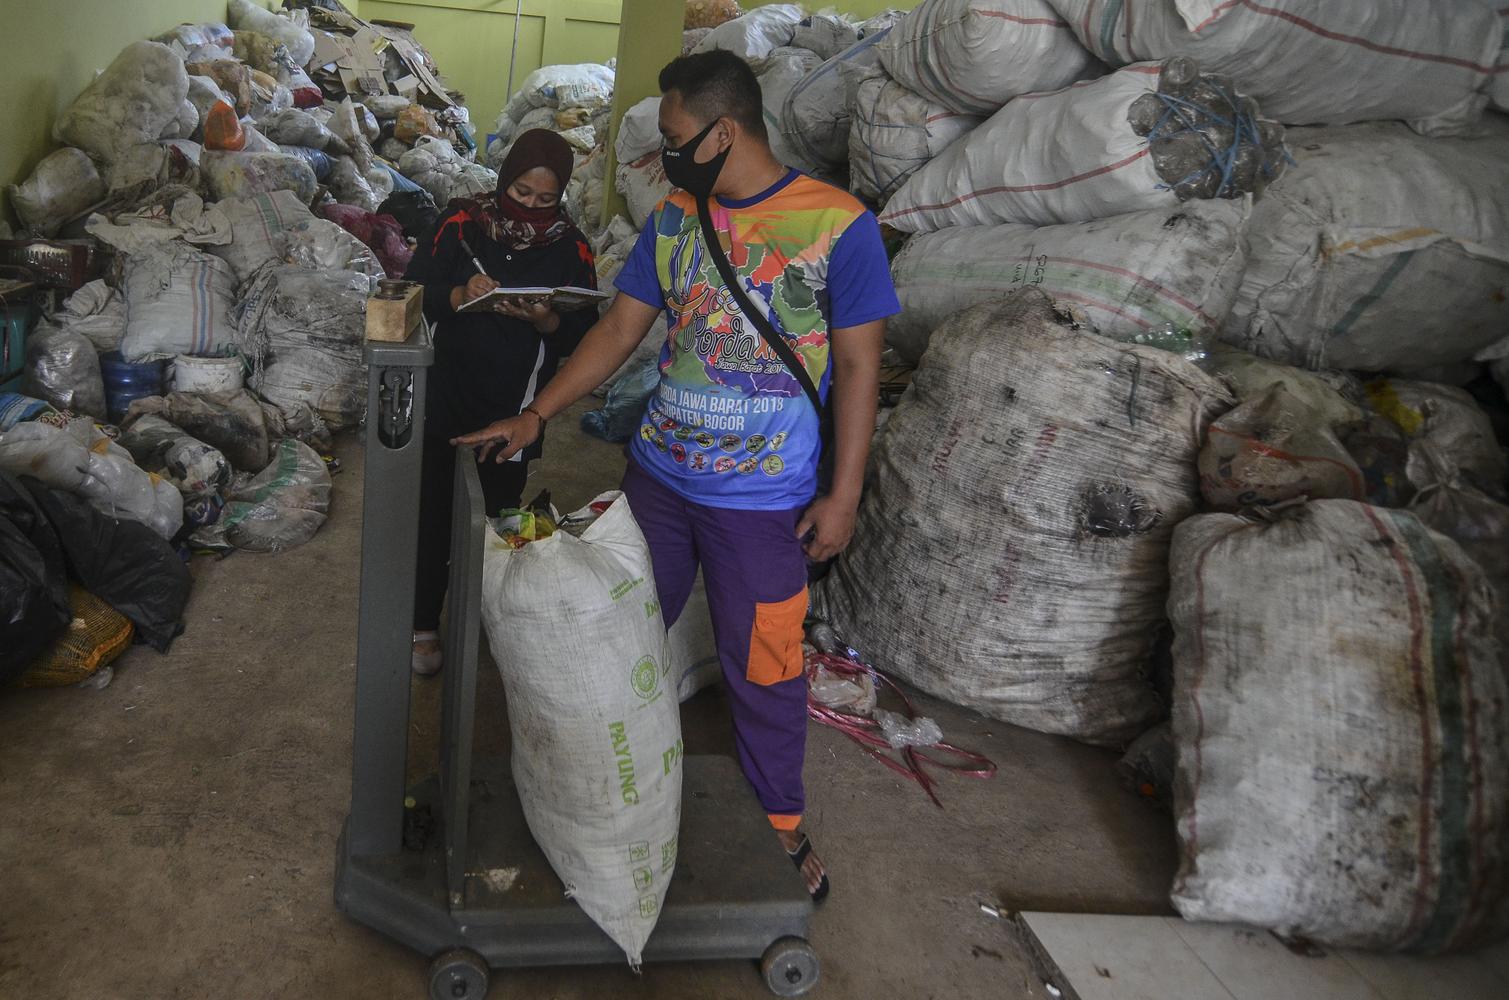 Lipsus Sampah Jakarta untuk Tulisan Ketiga (Bank Sampah)